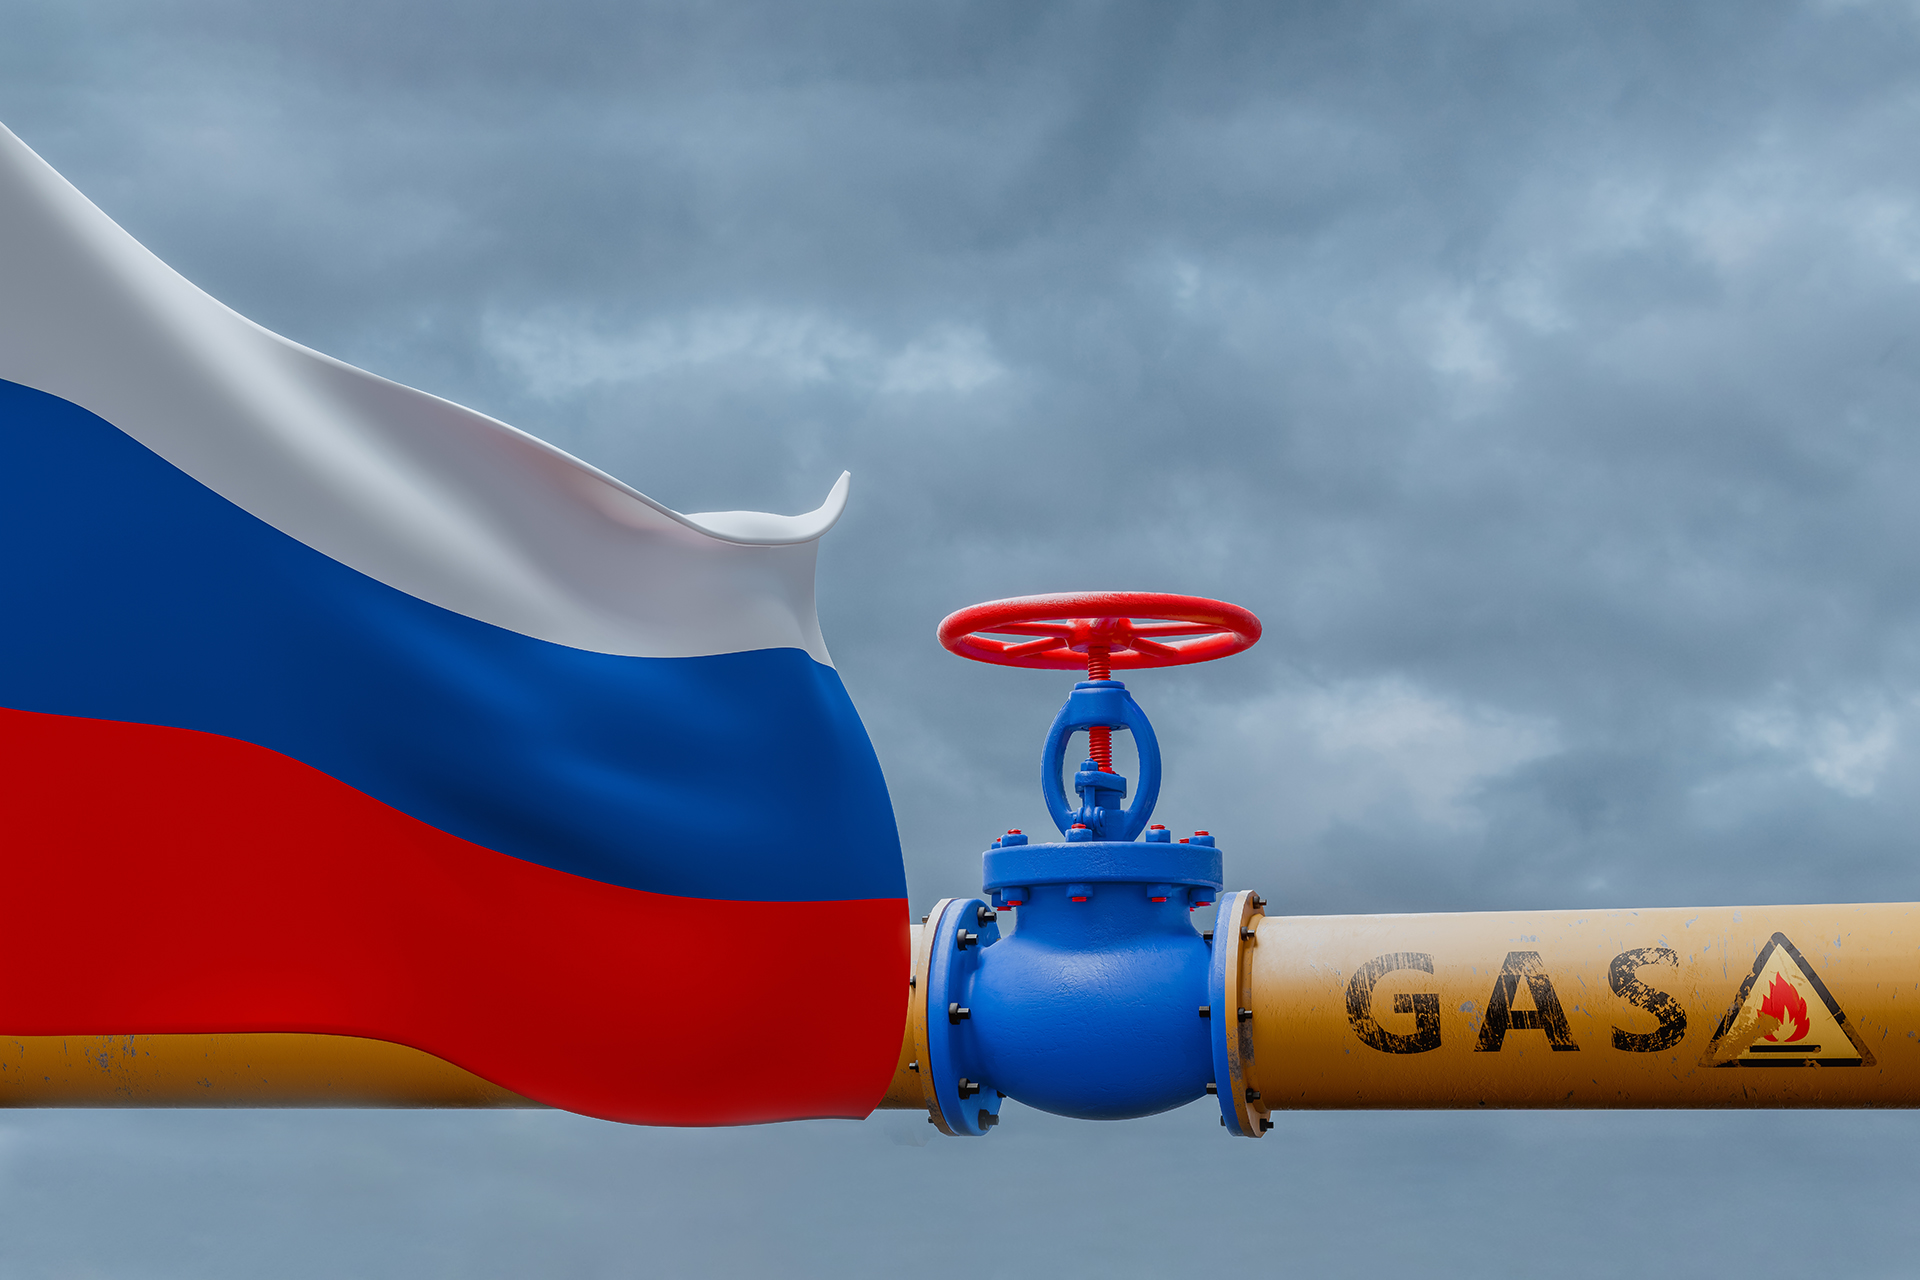 واردات الاتحاد الأوروبي من الغاز الطبيعي المسال الروسي تزداد بنسبة 38% | اقتصاد – البوكس نيوز